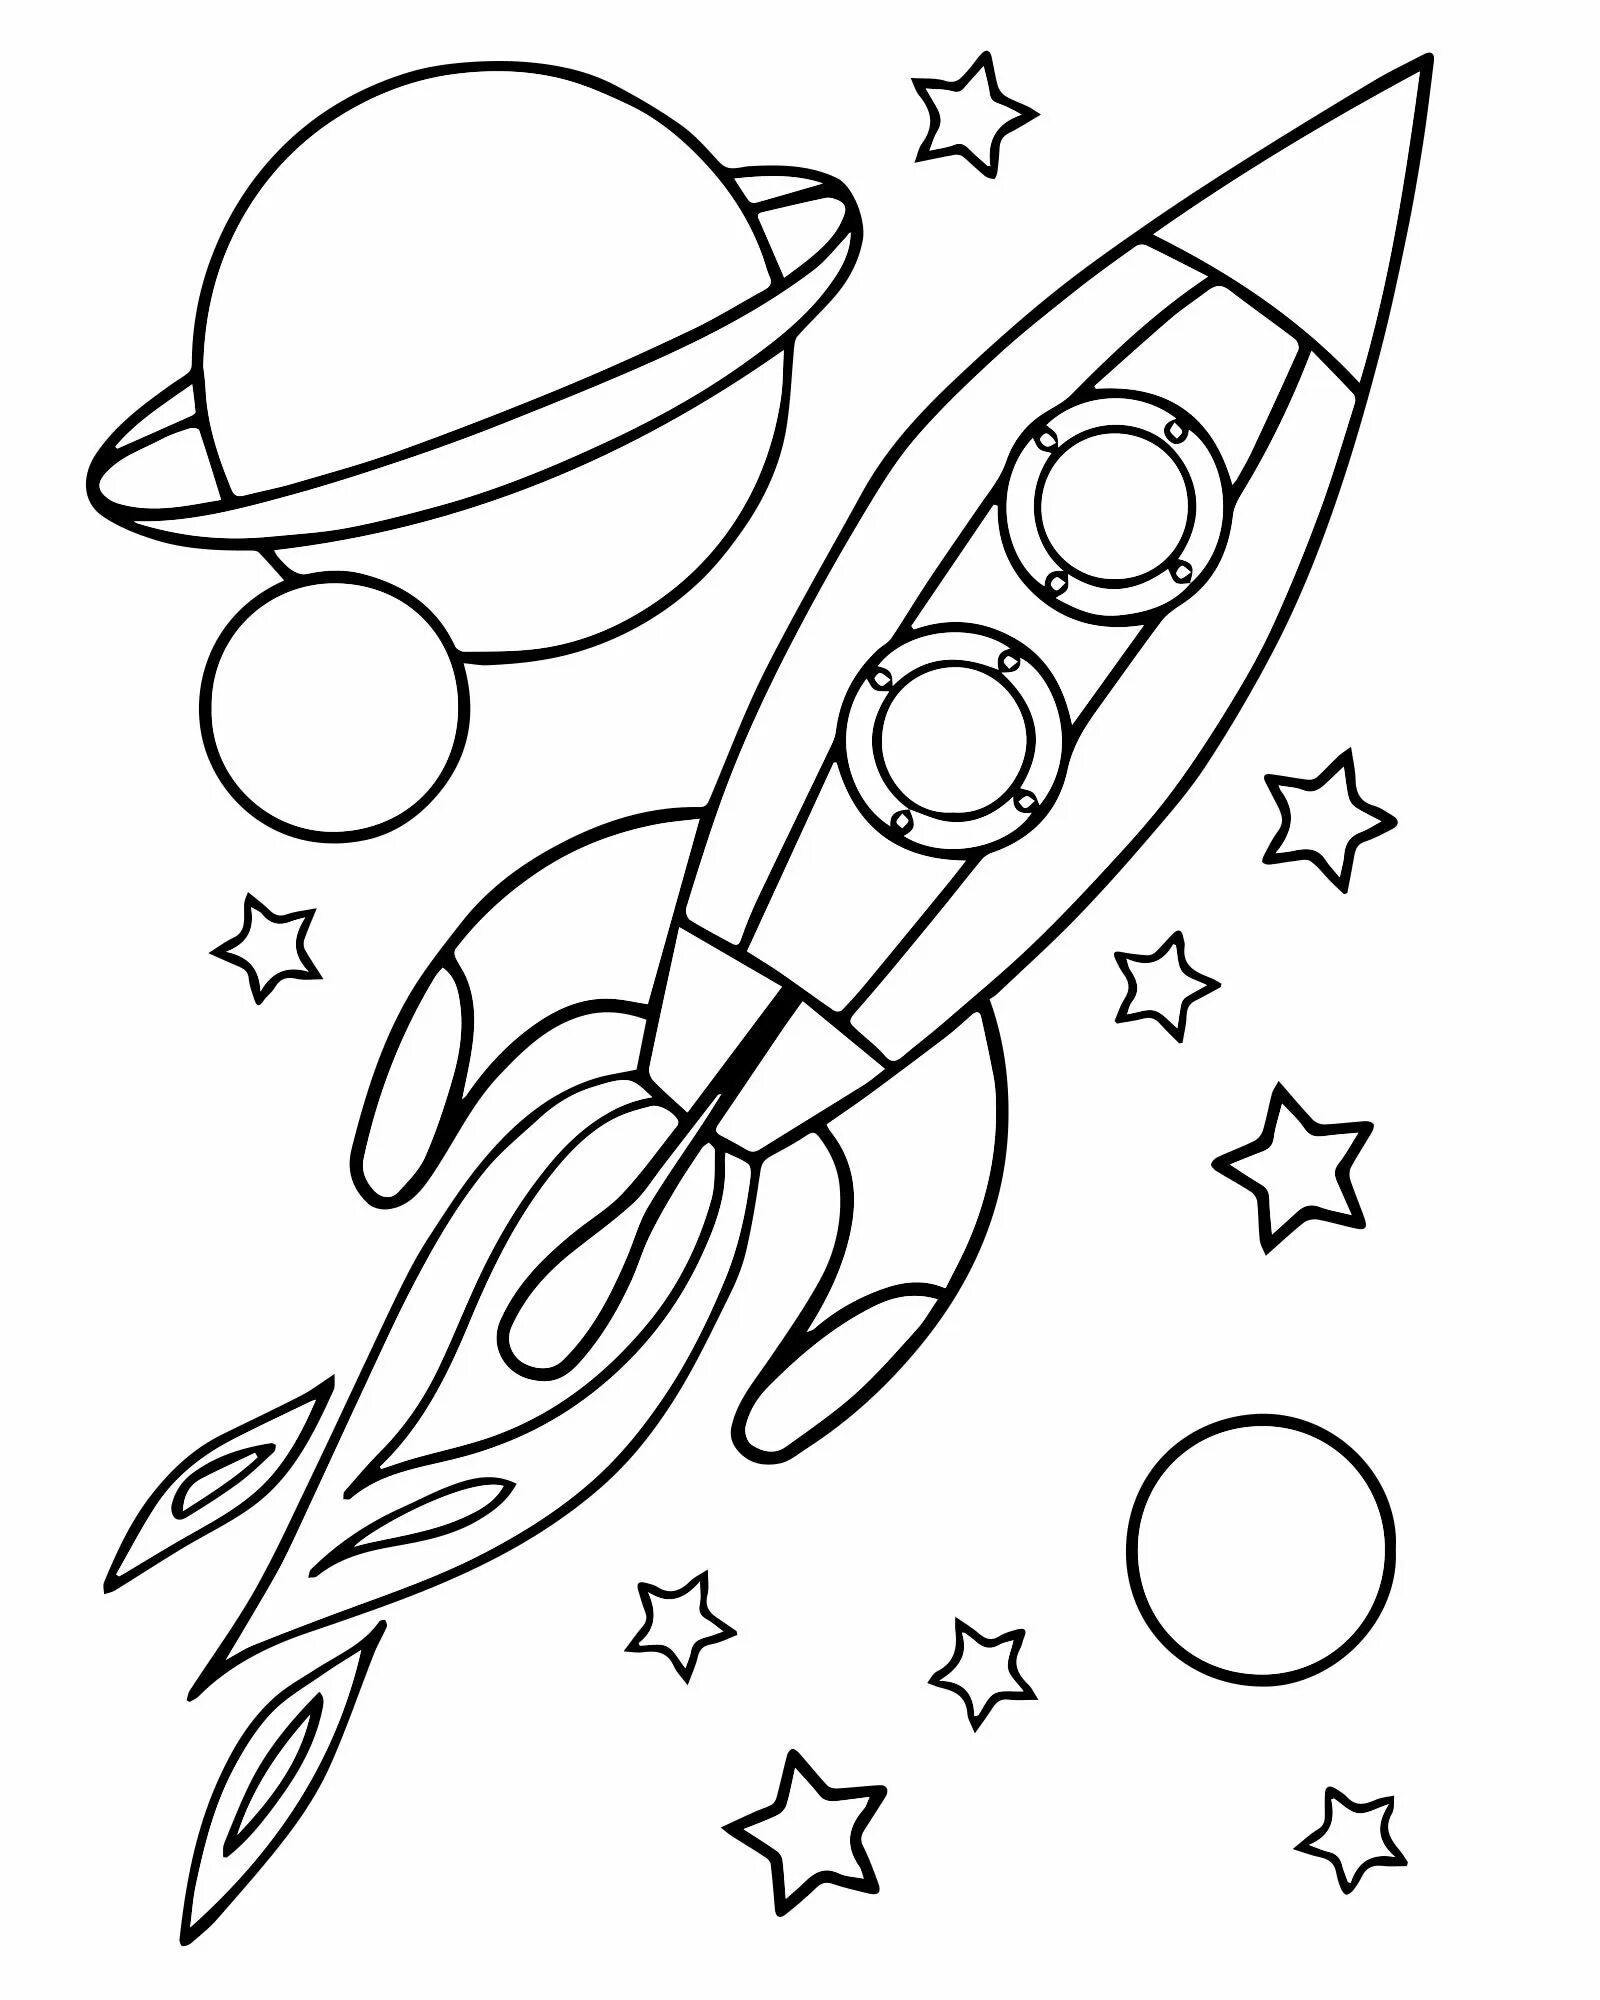 Ракета раскраска для детей 5 лет. Космос раскраска для детей. Раскраска. В космосе. Раскраска день космонавтики для детей. Космическая ракета раскраска.